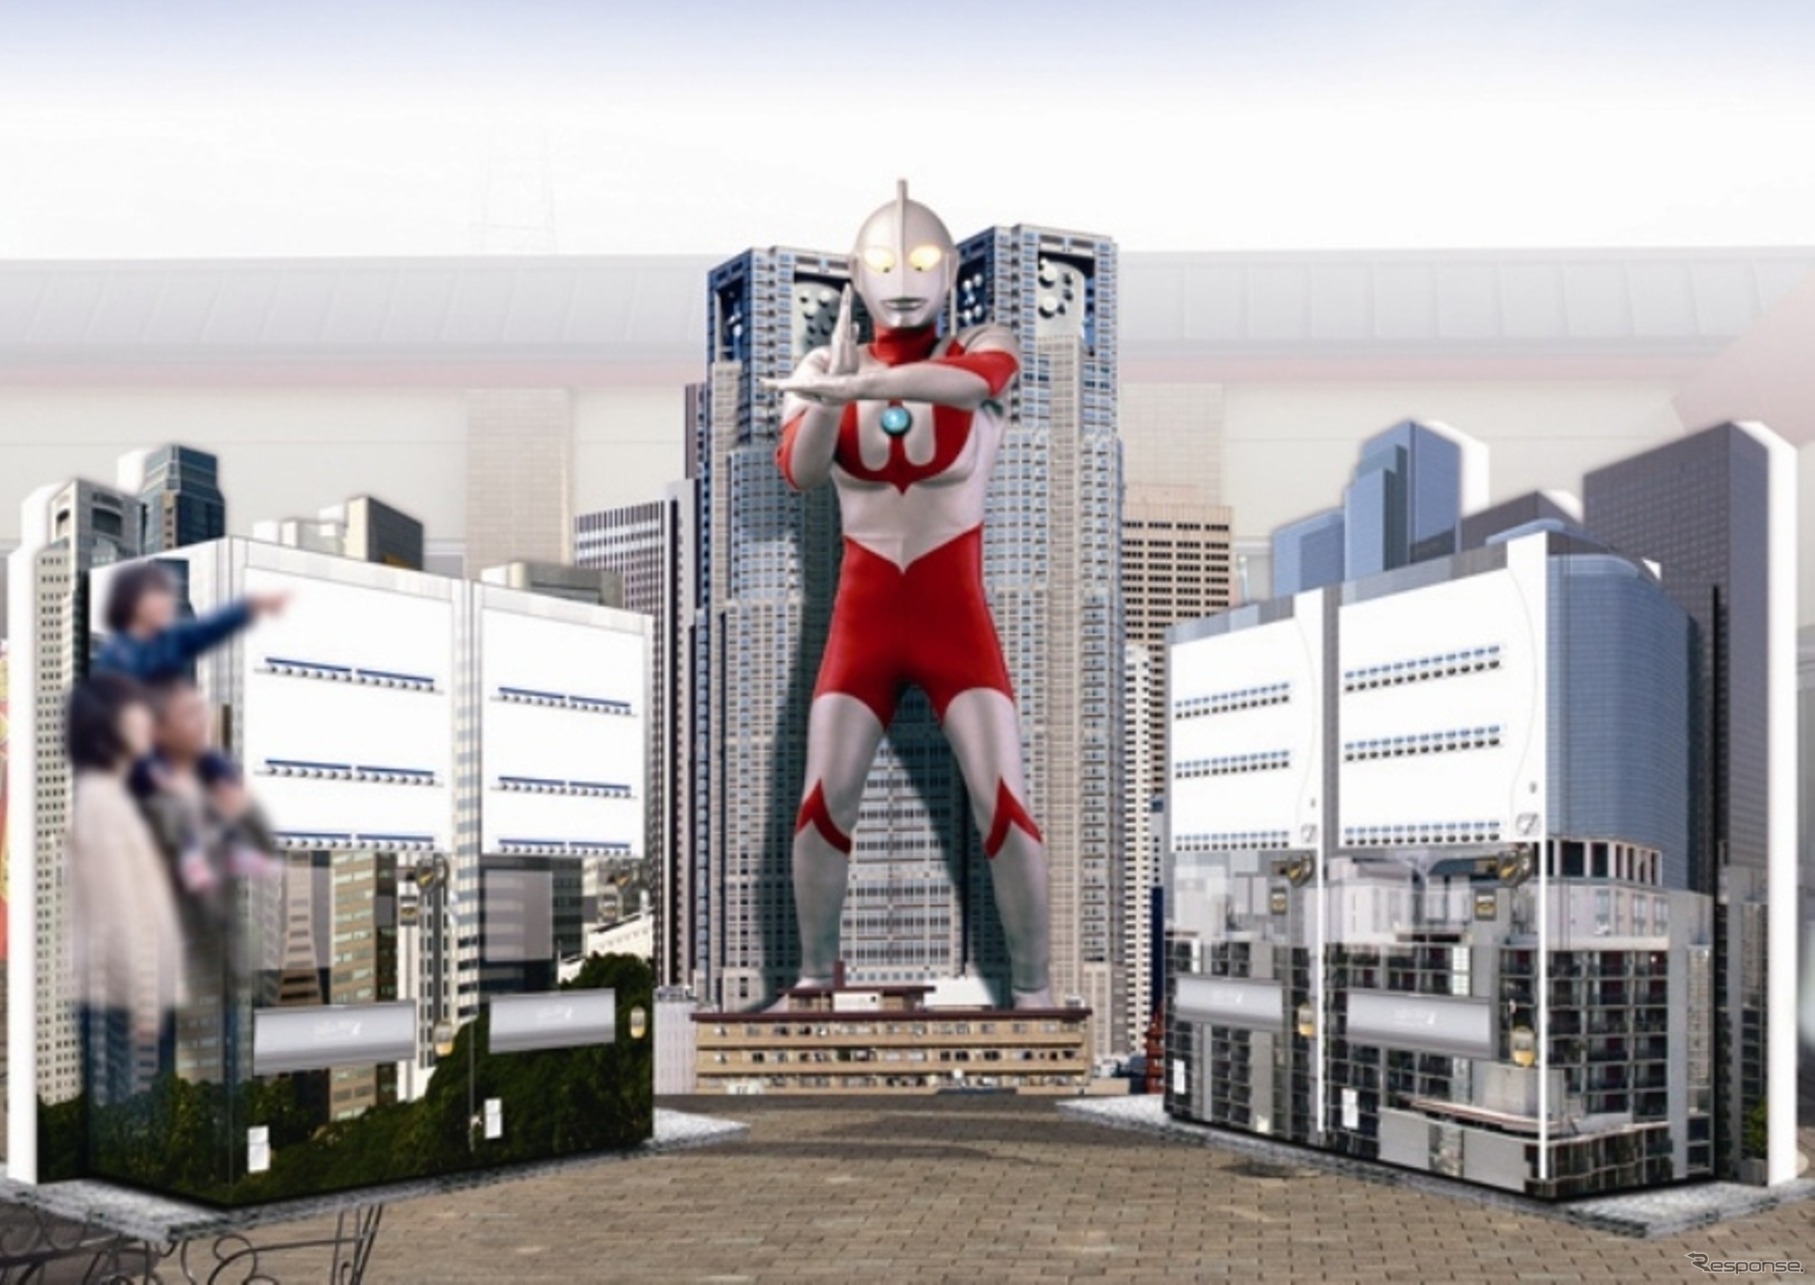 関越道高坂SAに27日設置されるキャラクター自動販売機「ウルトラマン」「ウルトラマンゼロ」